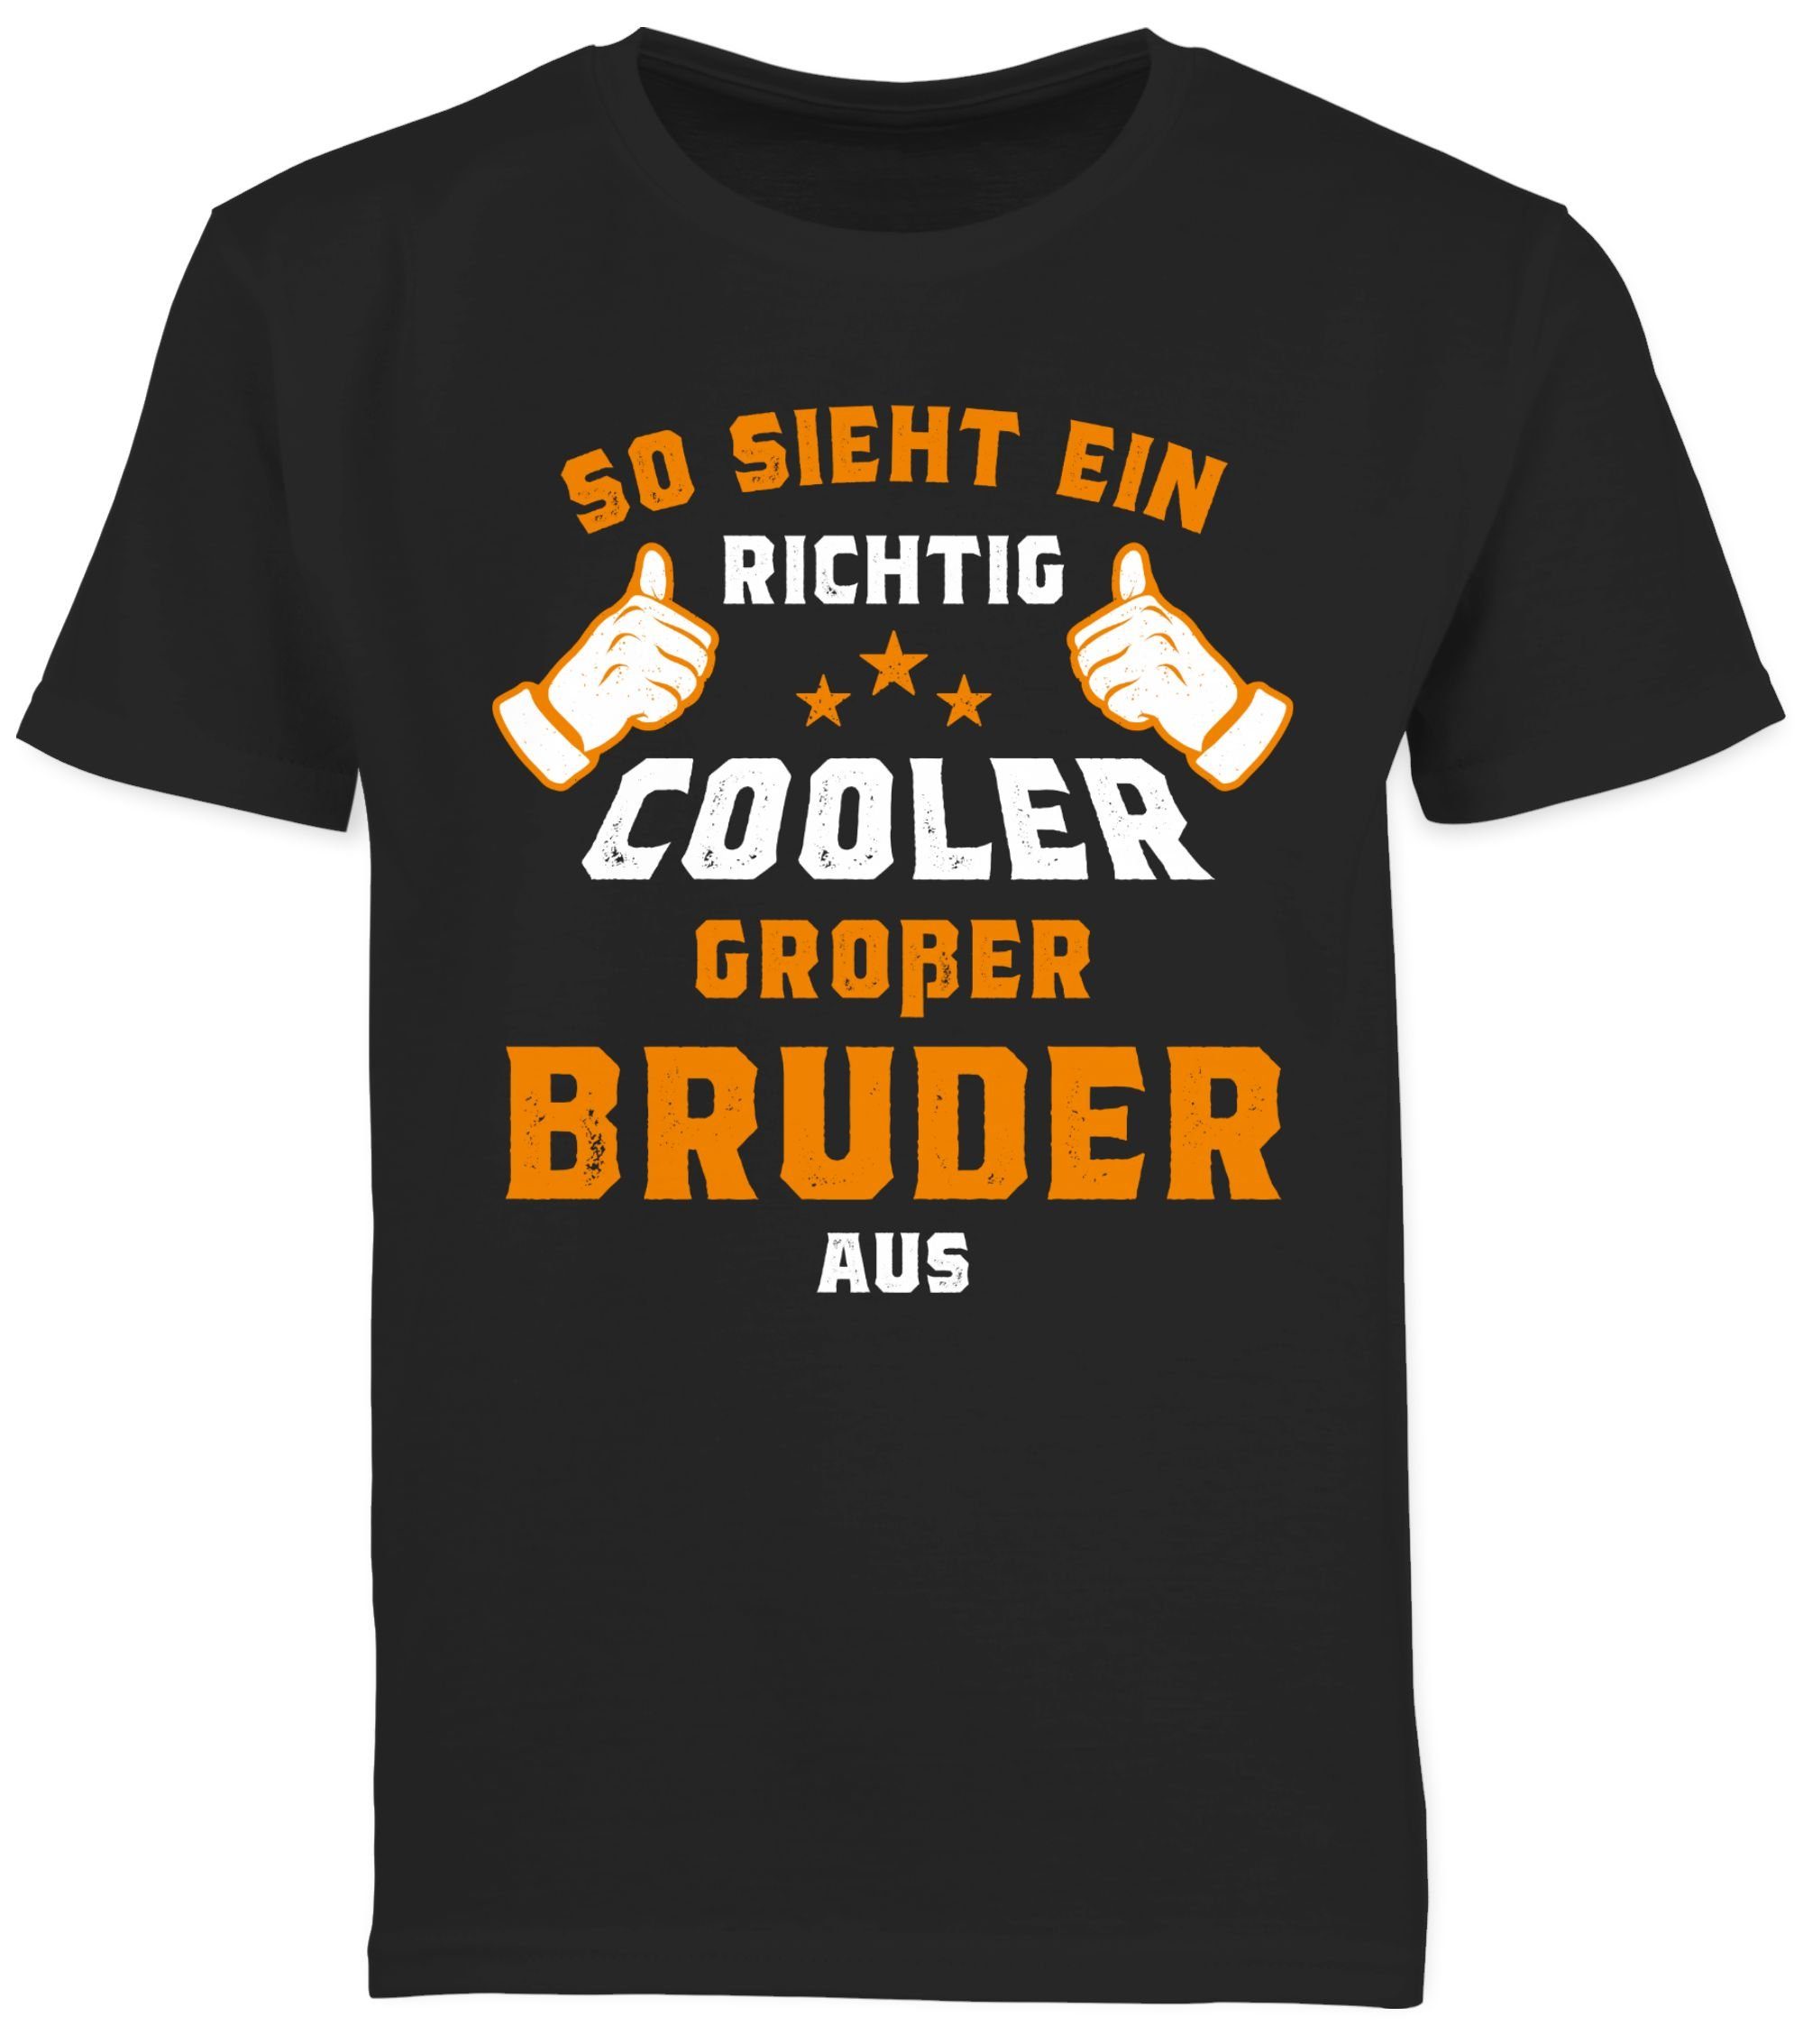 Shirtracer Bruder T-Shirt großer aus So Bruder richtig 3 ein cooler sieht Schwarz Großer Orange